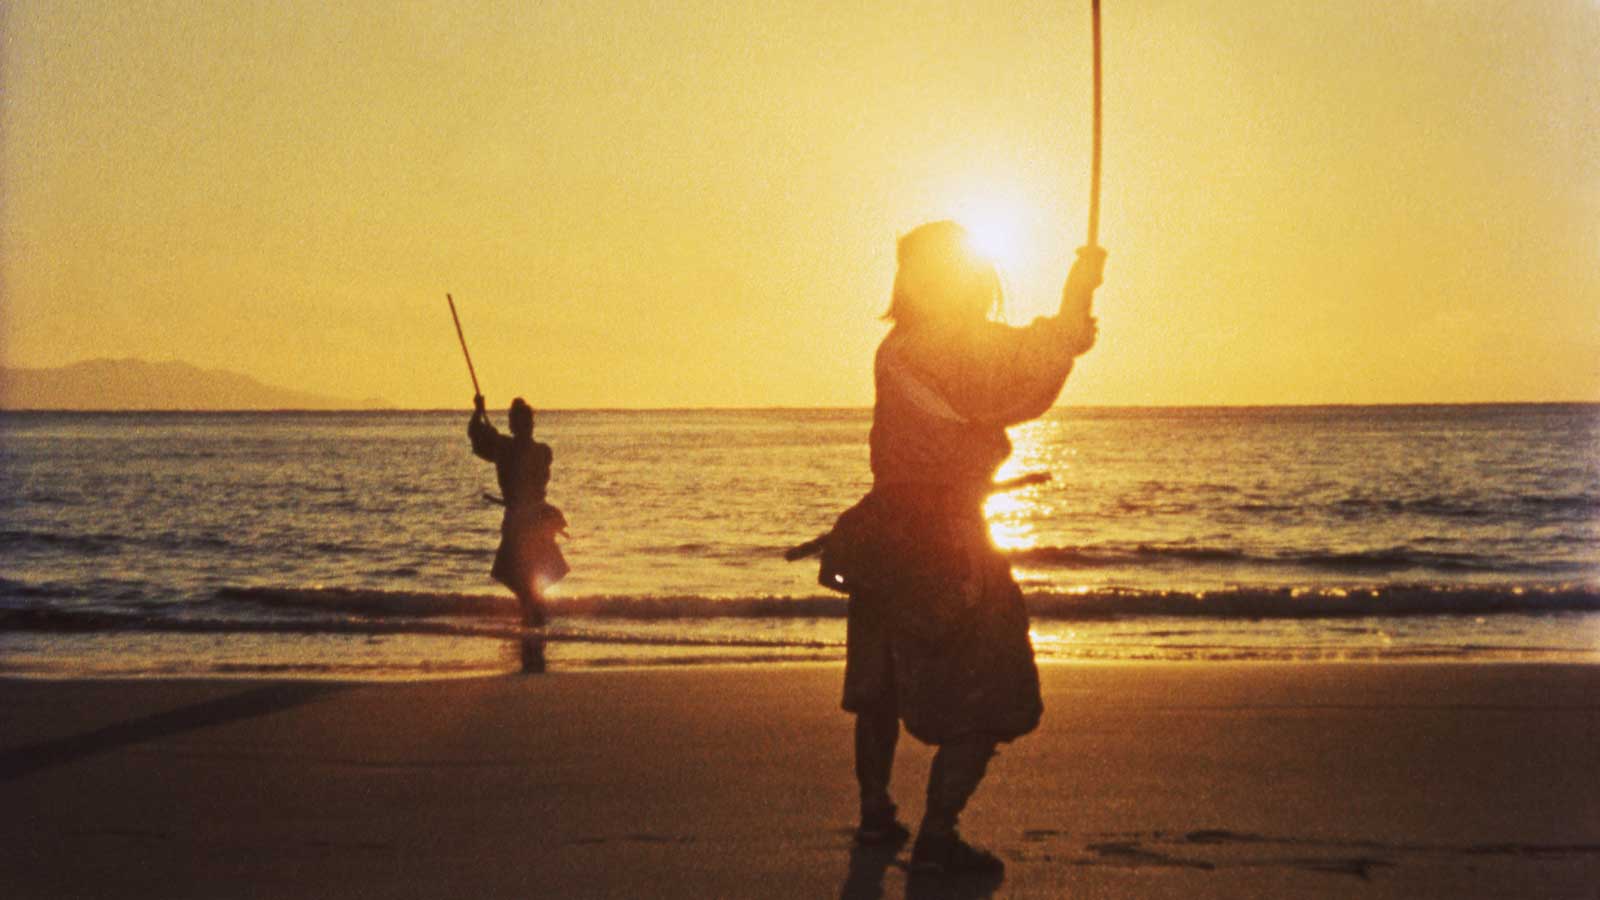 مبارزه دو سامورایی در ساحل مقابل دریا و نور آفتاب در سه گانه سامورایی